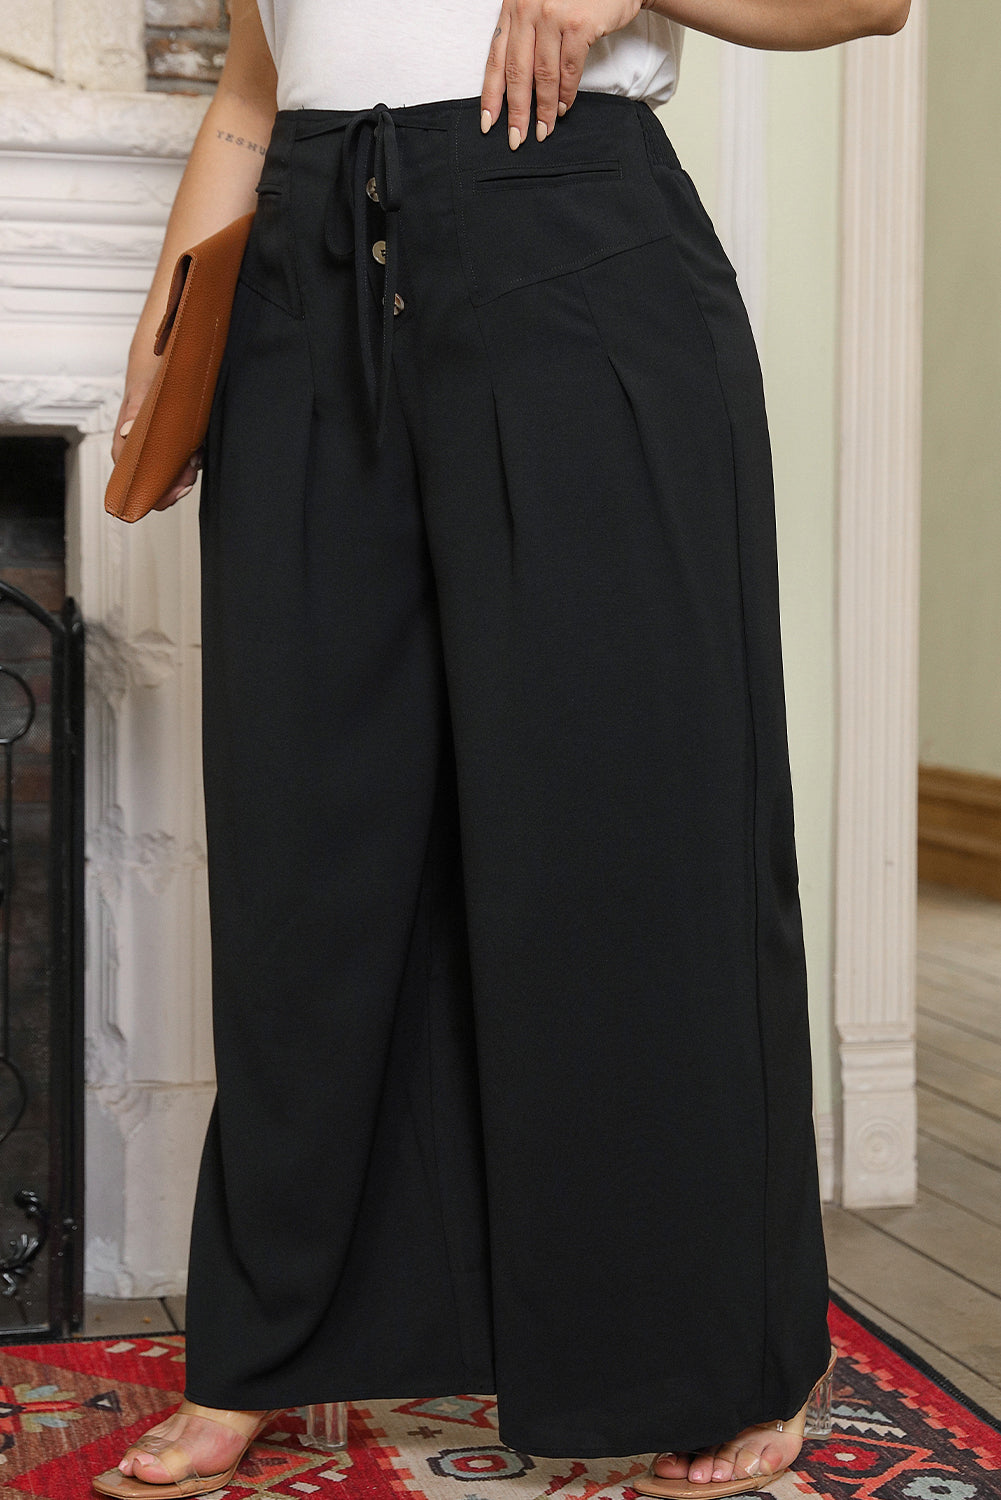 Črne hlače velike velikosti z vezalkami in širokimi nogami